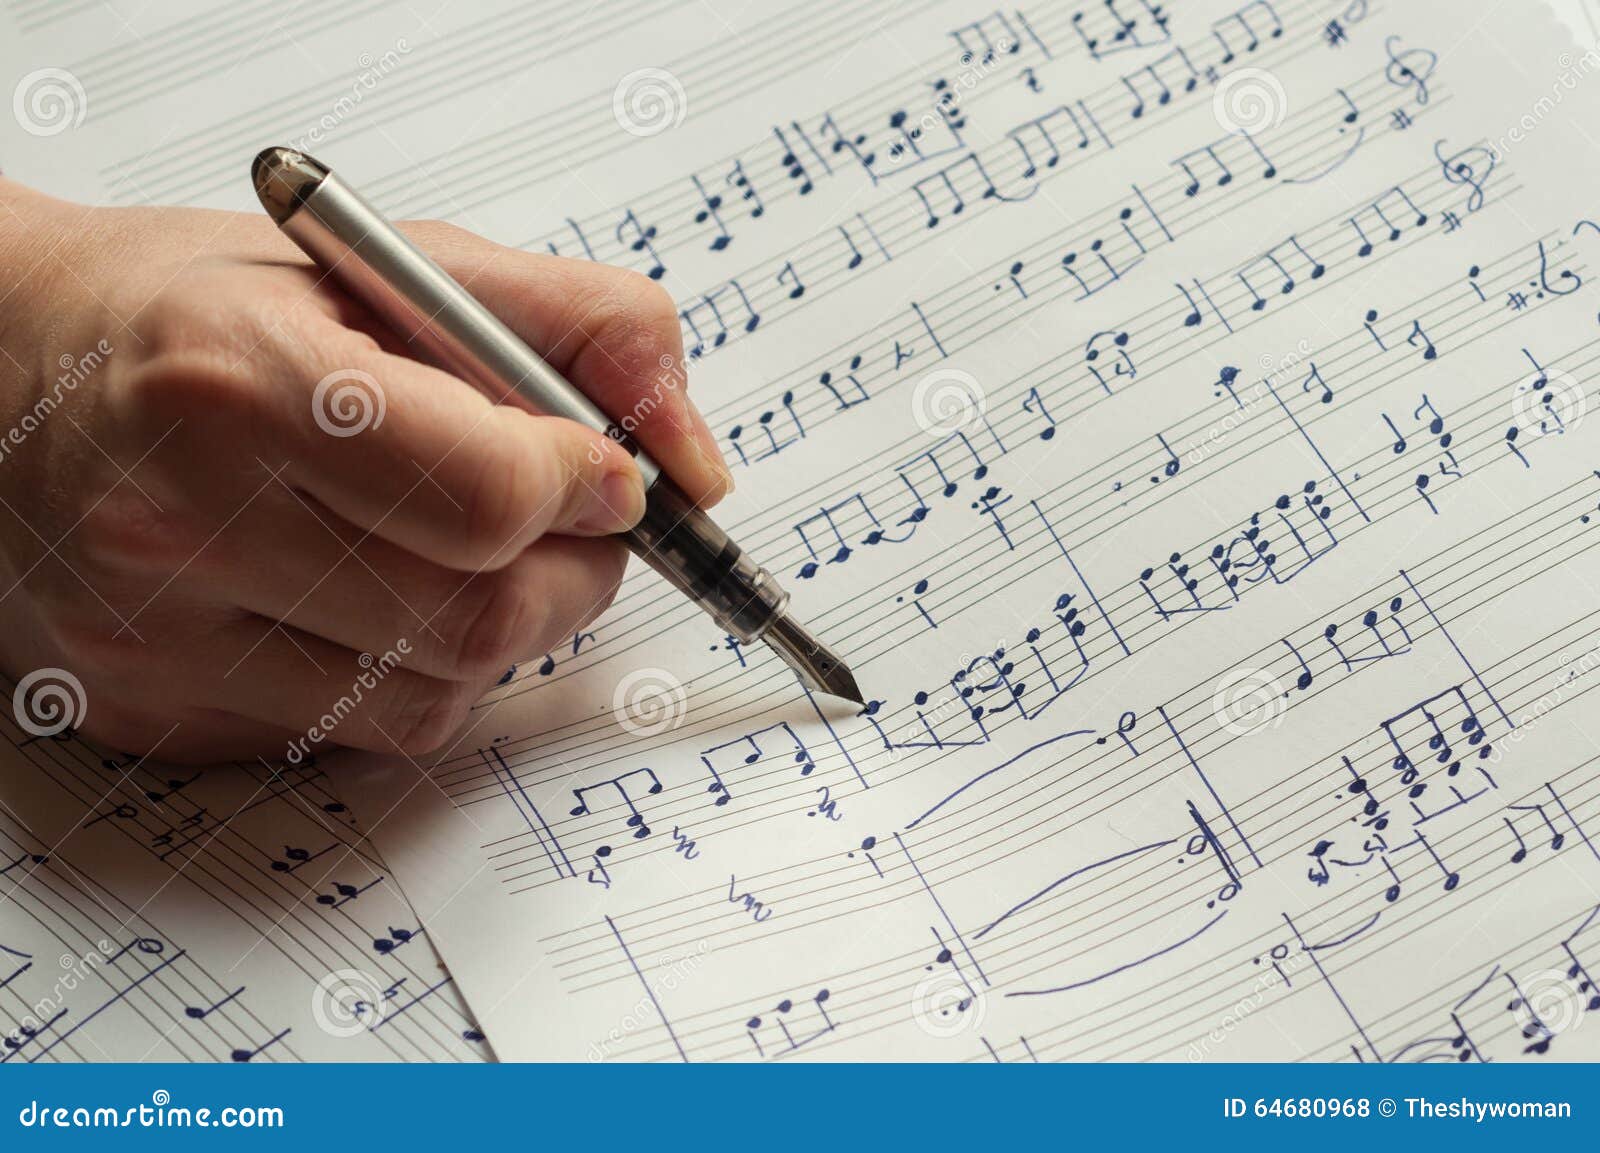 Нейронка пишет песни. Написание нот фото. Теория музыки. Что писать в нотной тетради. Songwriter рисунок.